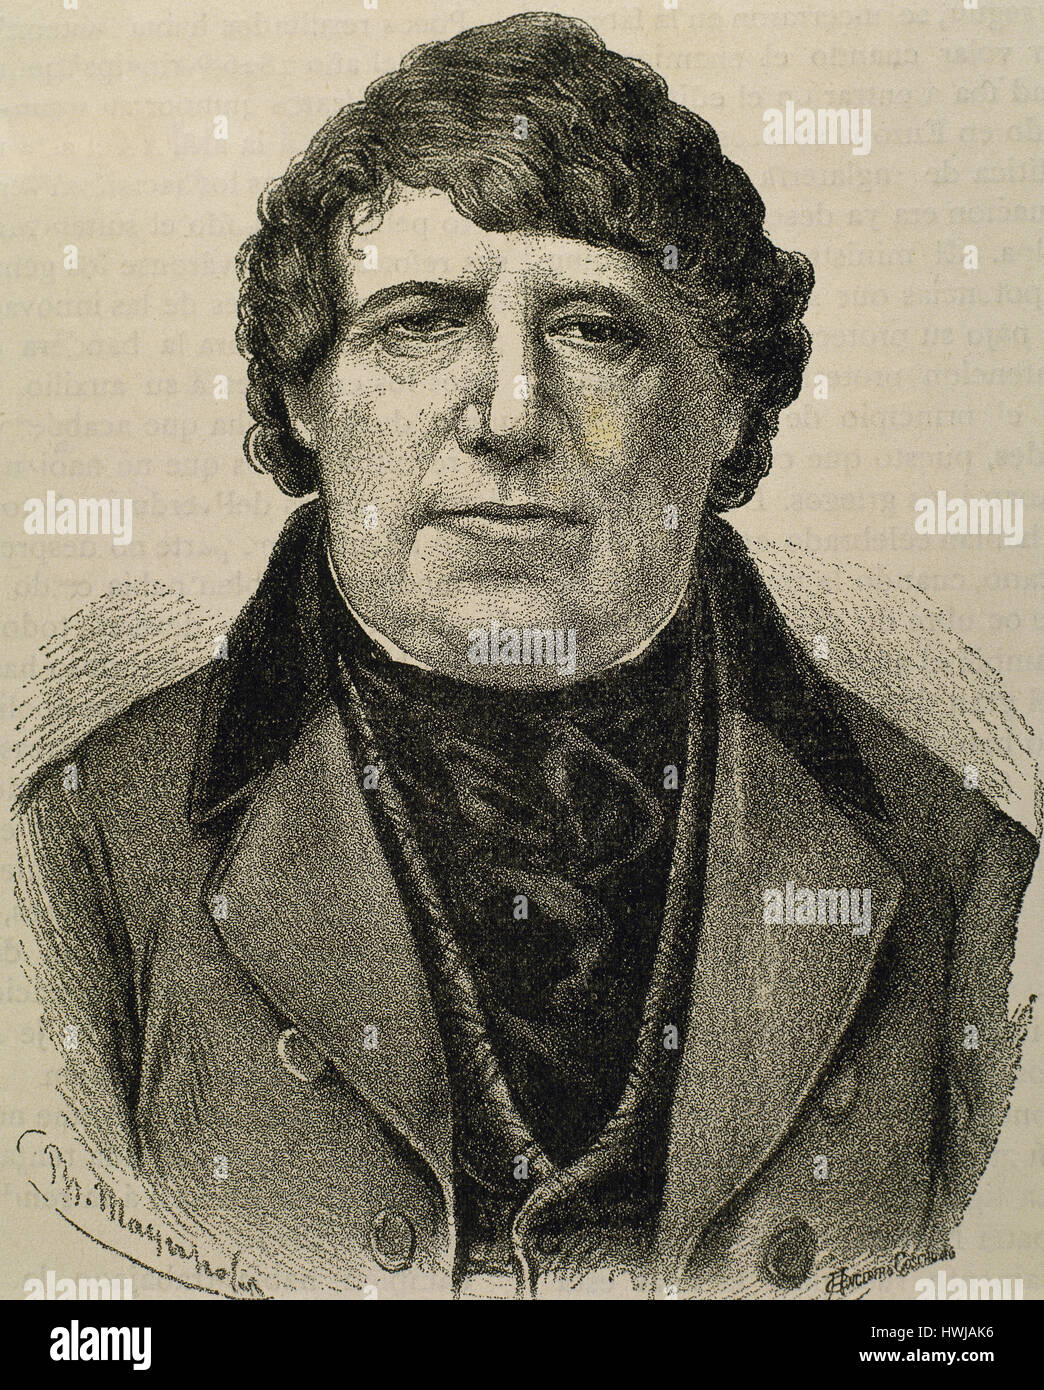 Daniel O'Connell (1775-1847). Líder político irlandés. Retrato. Grabado. Foto de stock